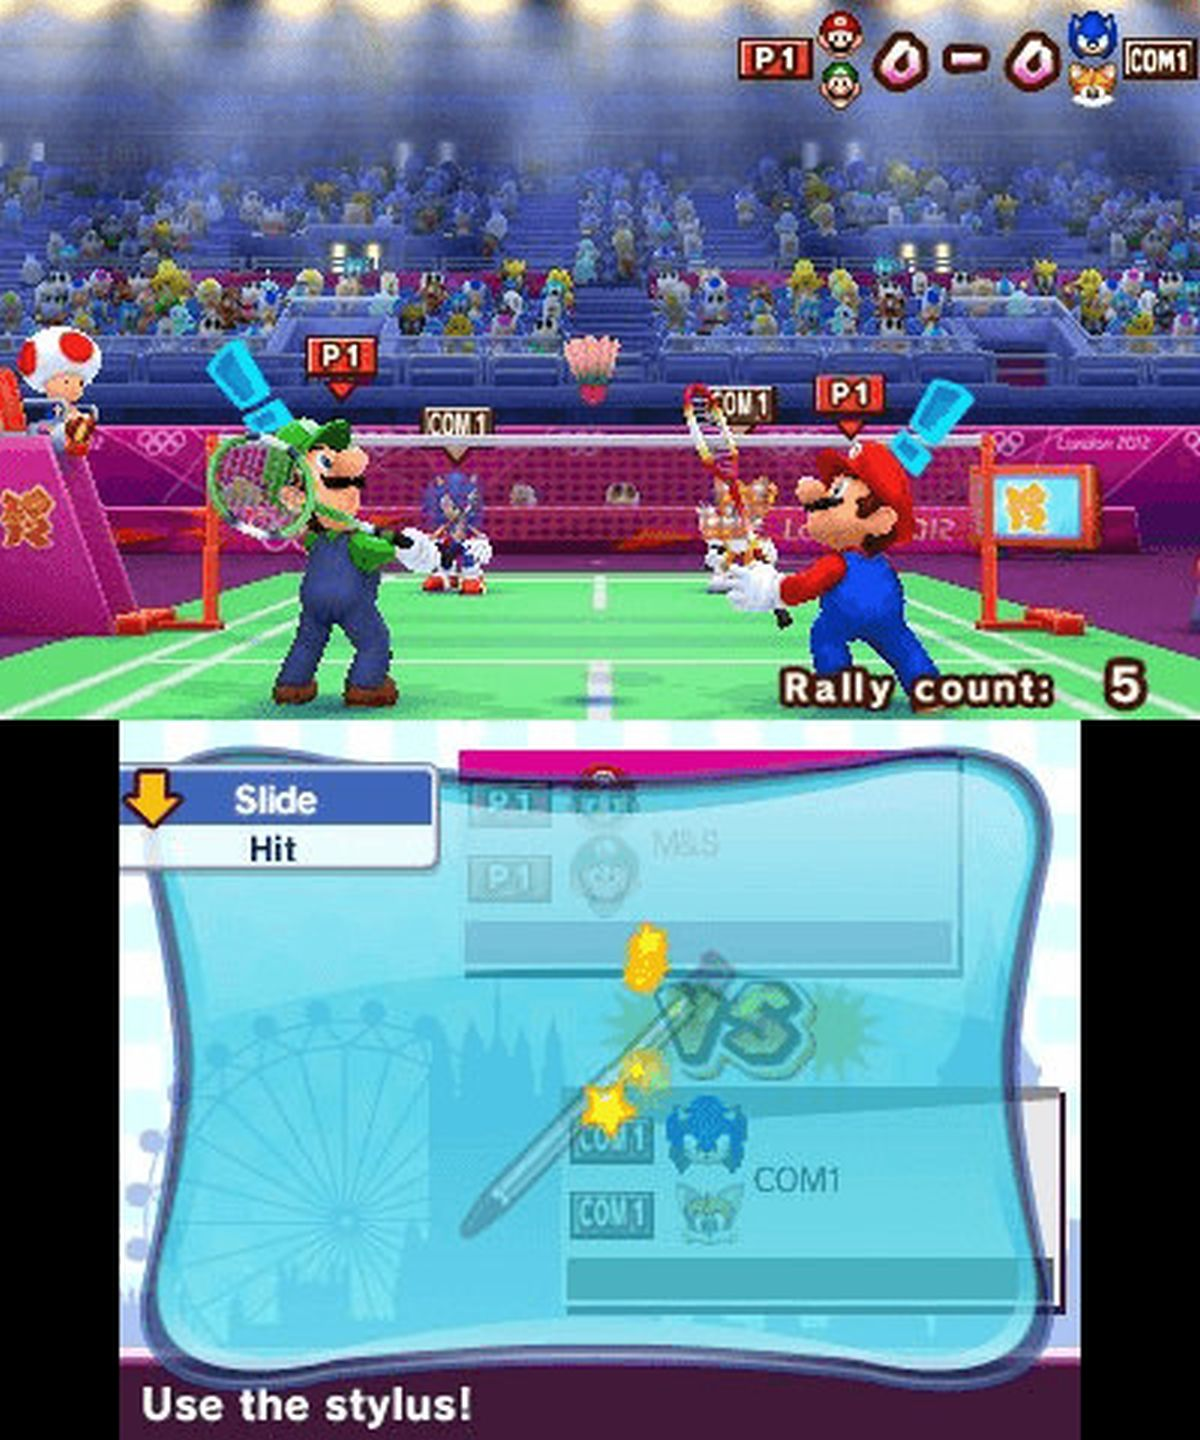 bei Mario 2012 London Sonic - [Nintendo 3DS] Spielen & - den olympischen